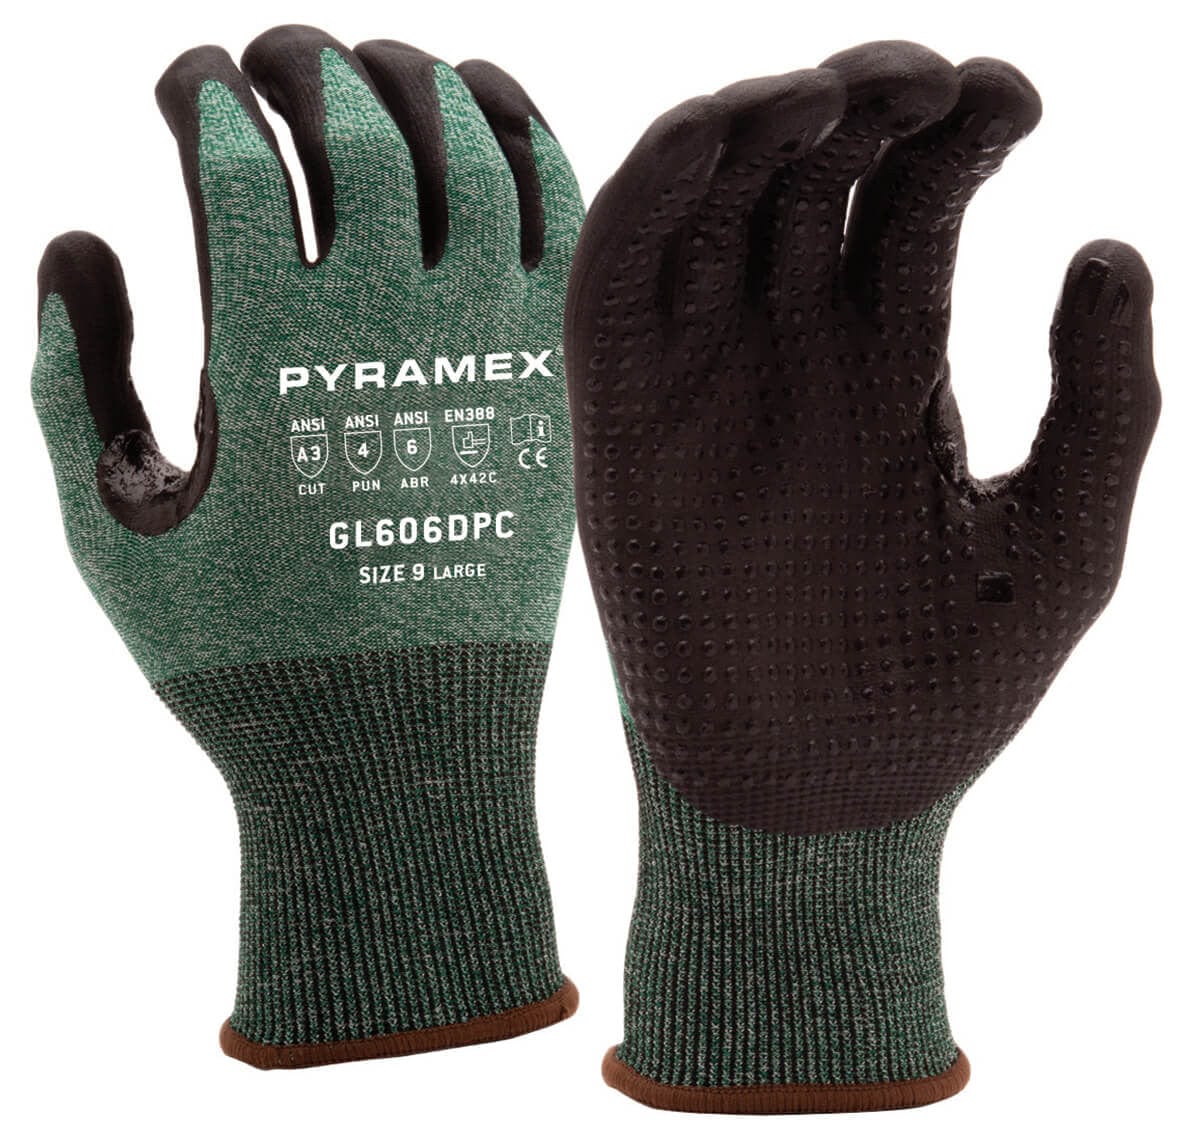 Pyramex GL606DPC Cut-Resistant A3 Foam Nitrile Dipped Gloves